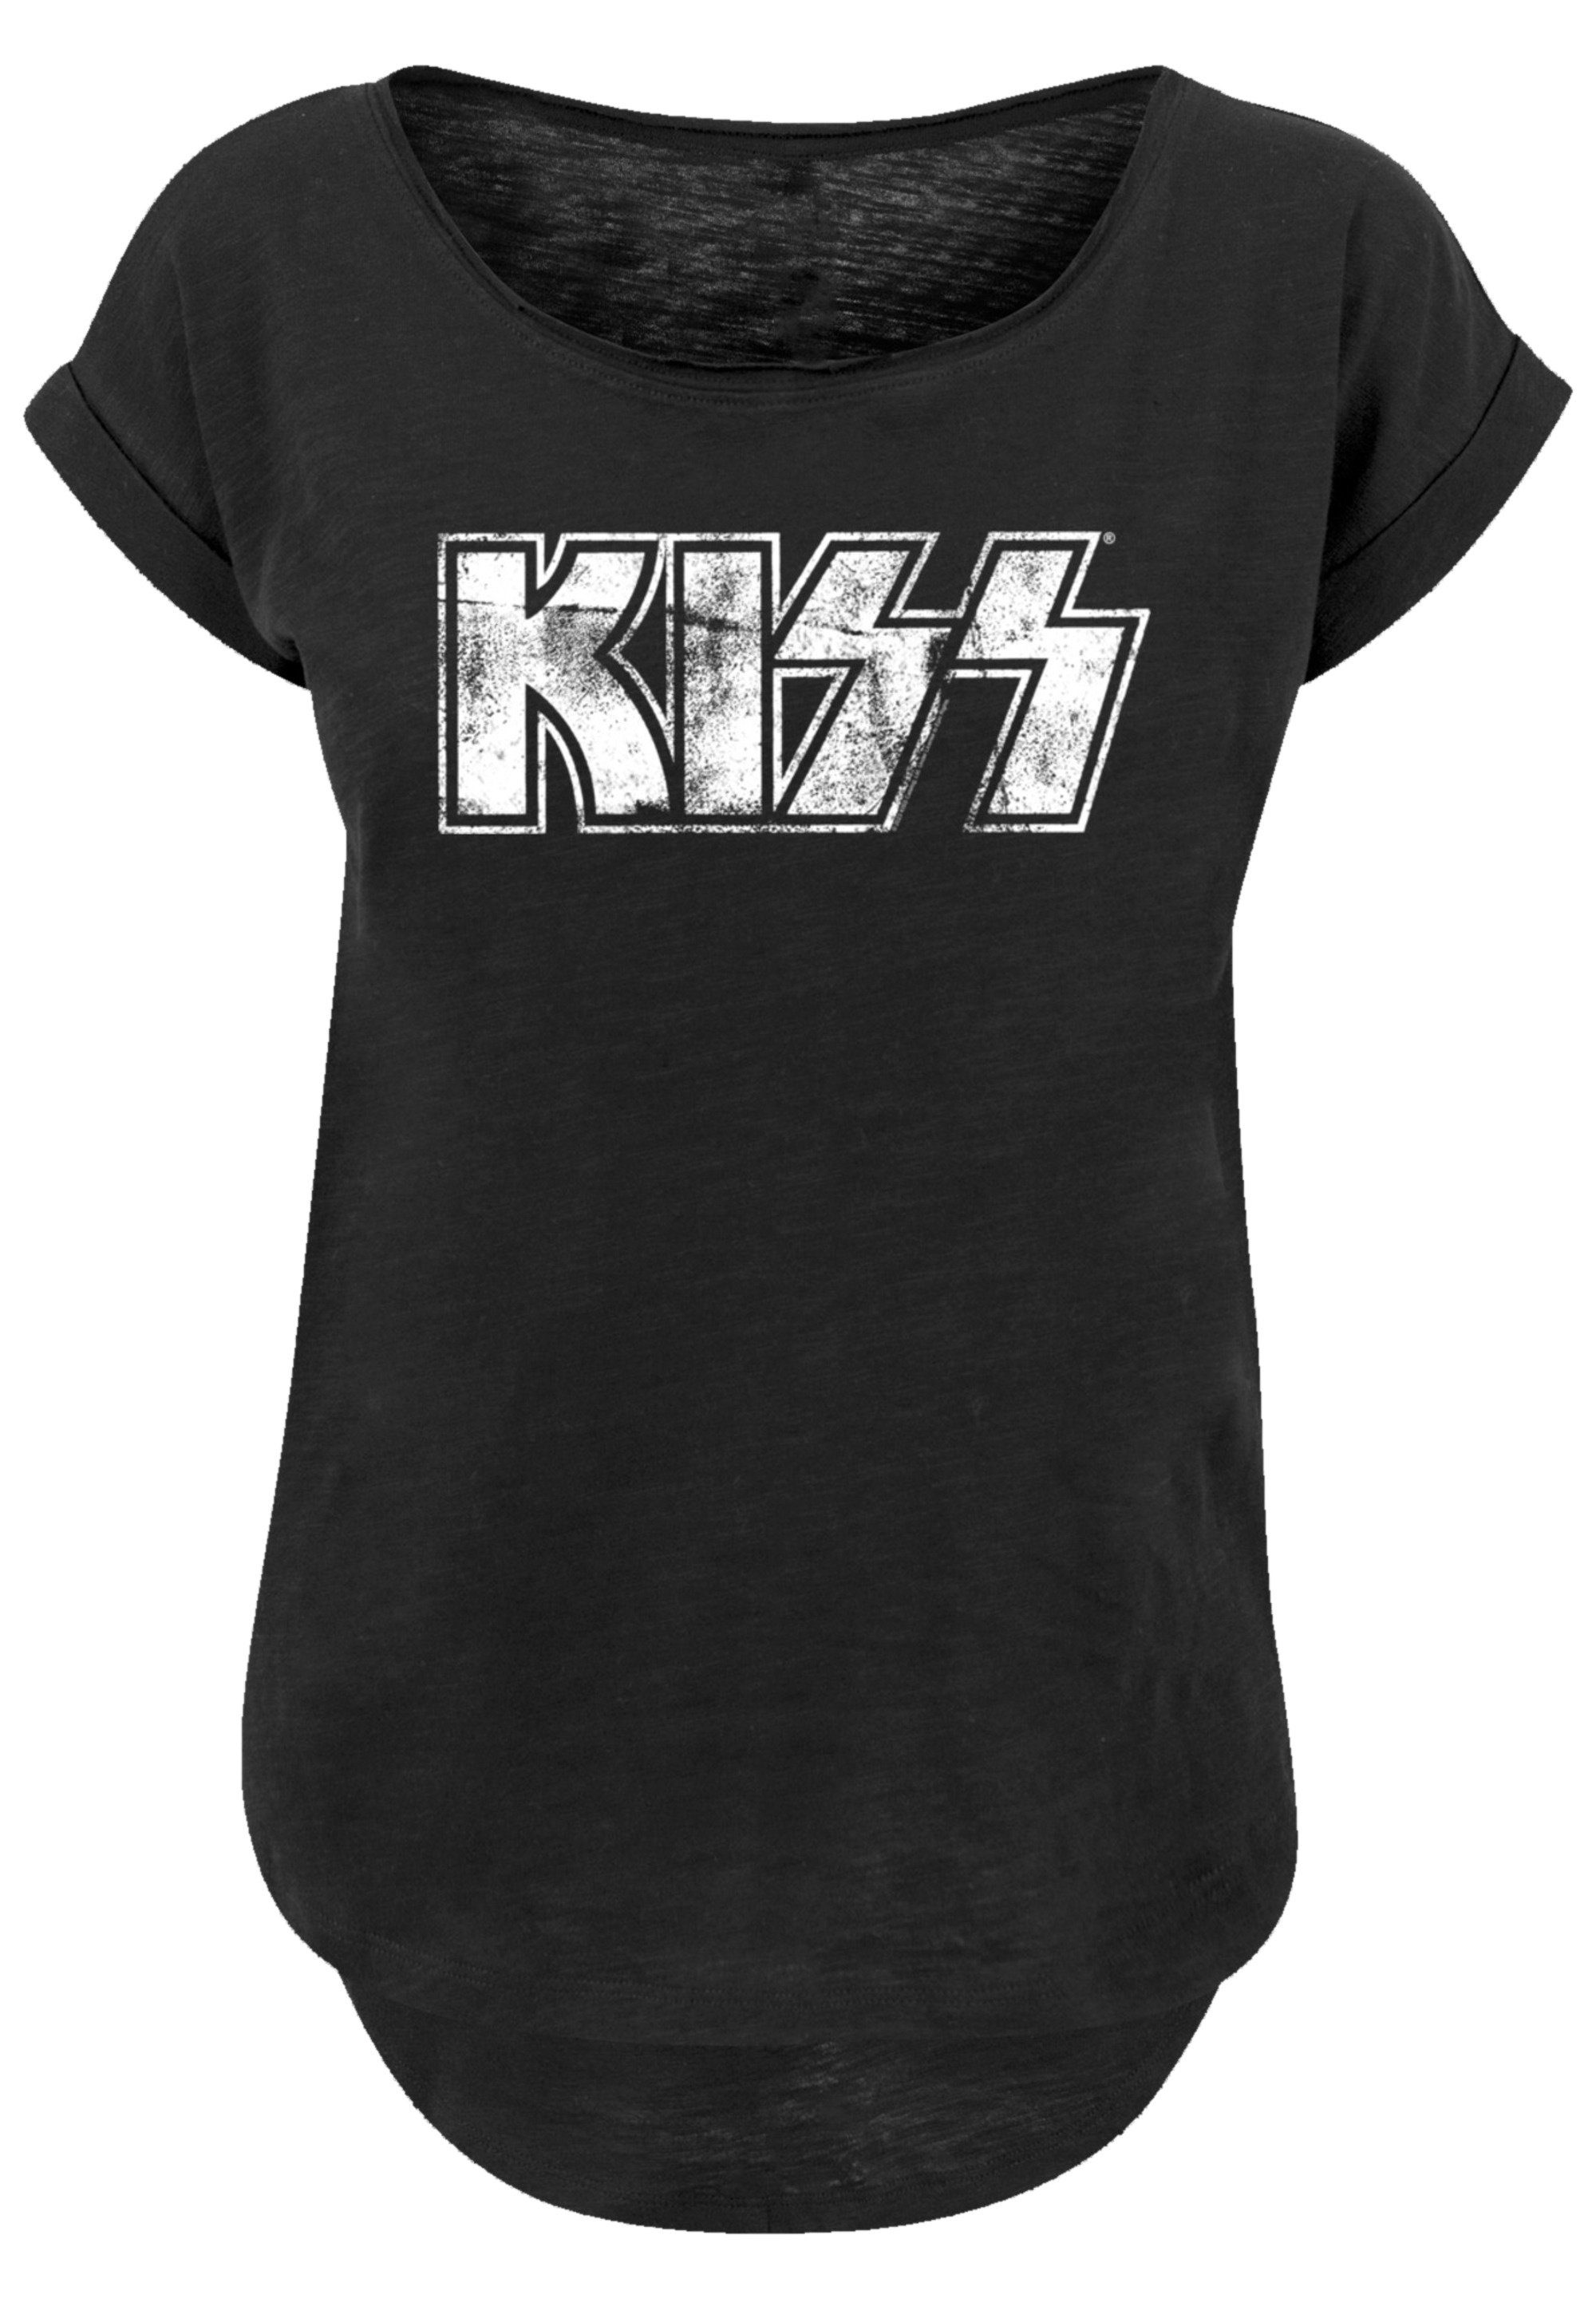 F4NT4STIC T-Shirt Kiss By Logo Band Vintage Off, hohem Sehr Tragekomfort Premium Baumwollstoff weicher Qualität, Rock Rock Musik, mit